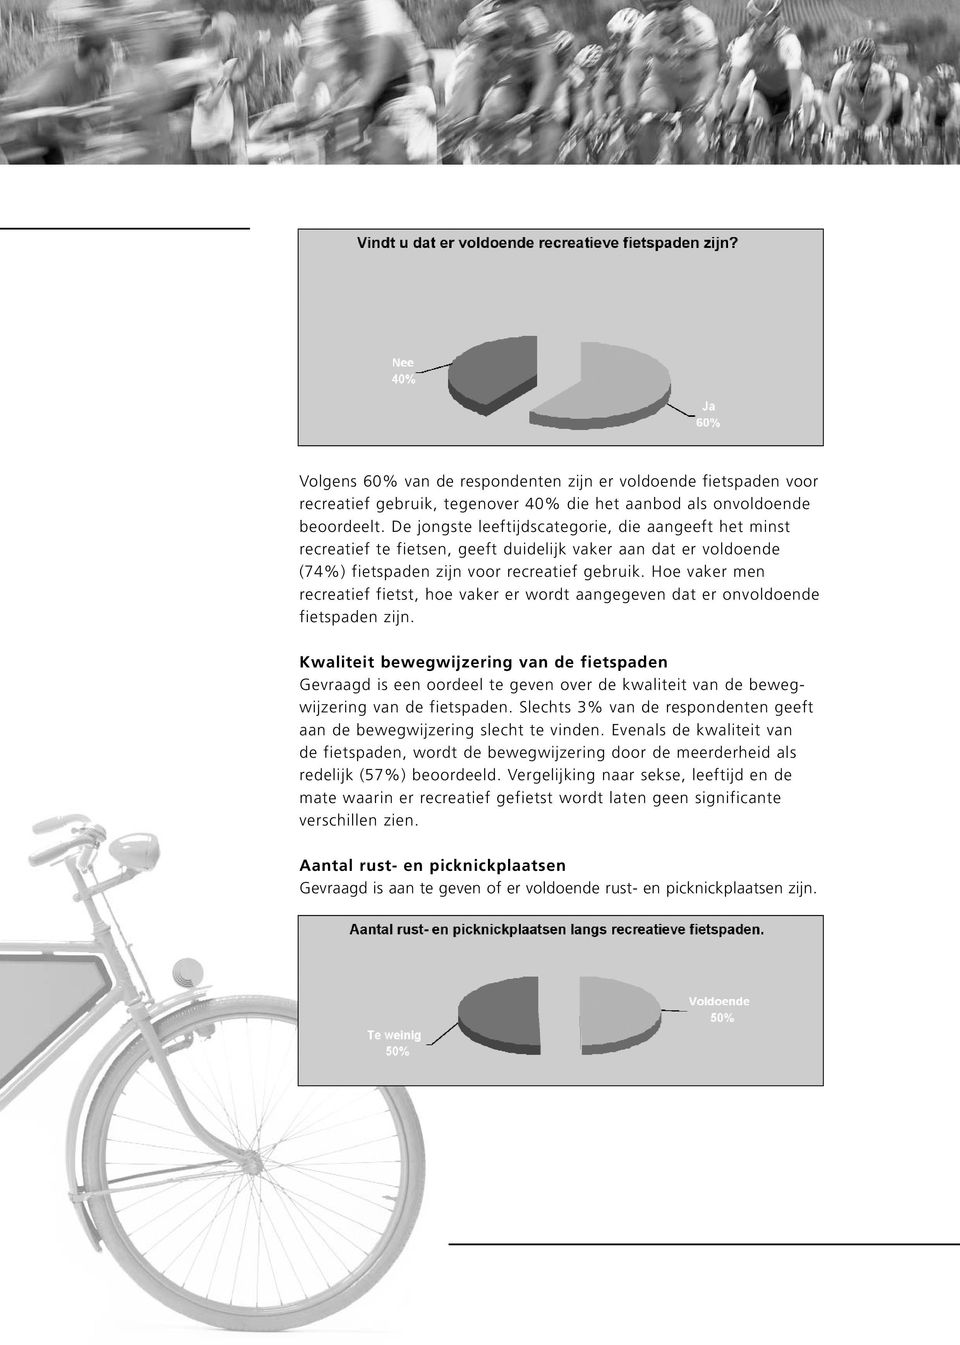 Hoe vaker men recreatief fietst, hoe vaker er wordt aangegeven dat er onvoldoende fietspaden zijn.